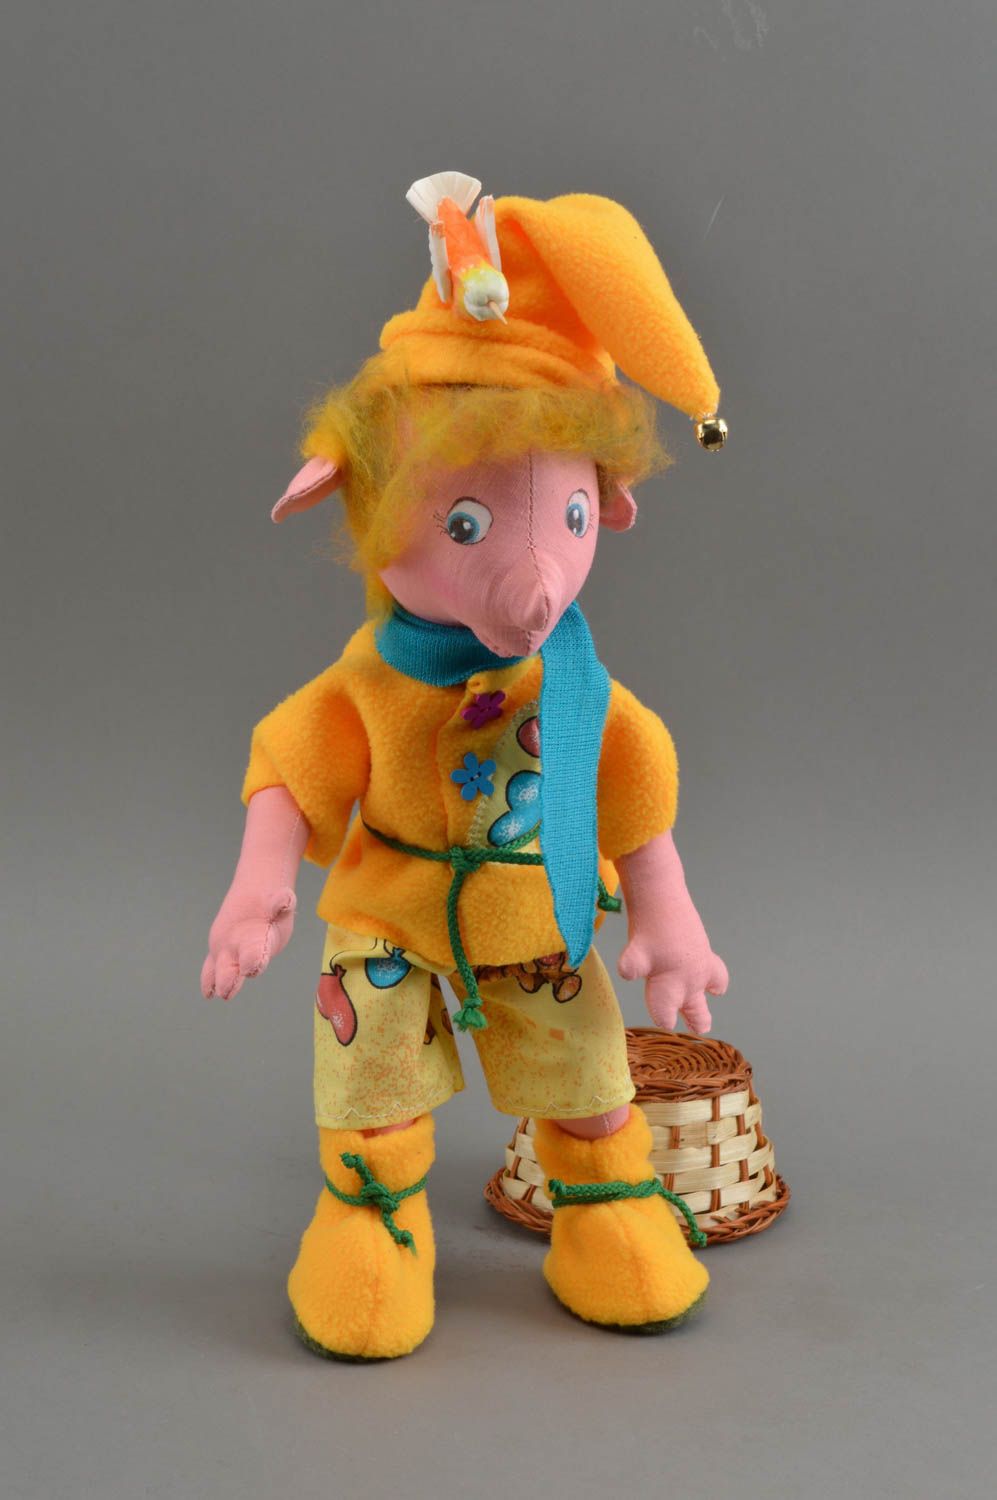 Игрушка кукла из ткани небольшая в виде гномика в желтом ручной работы фото 1